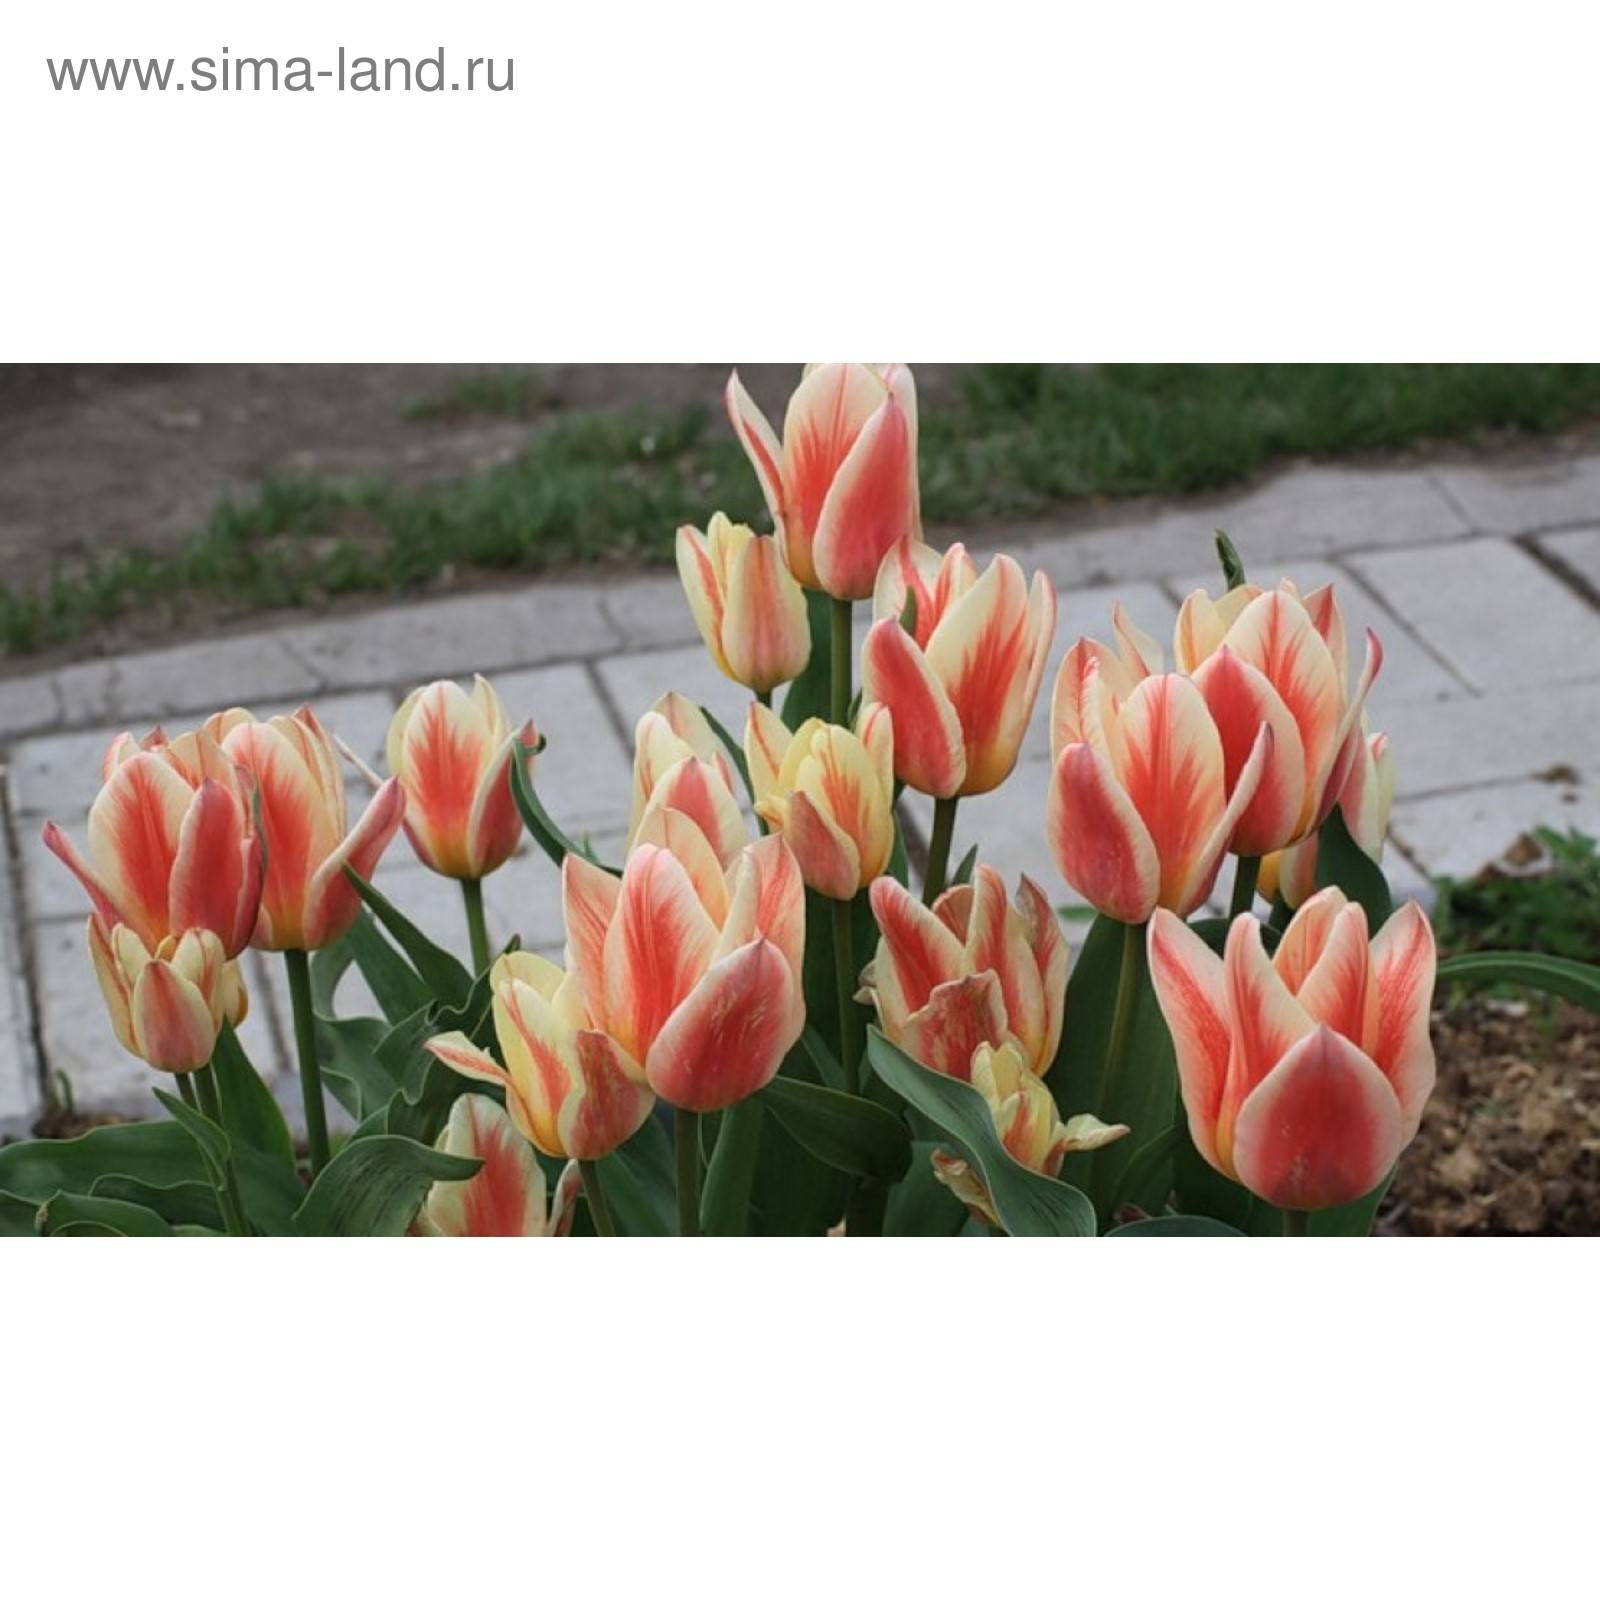 Кустовые тюльпаны ?: фото, посадка и уход, сорта с названиями | qlumba.com